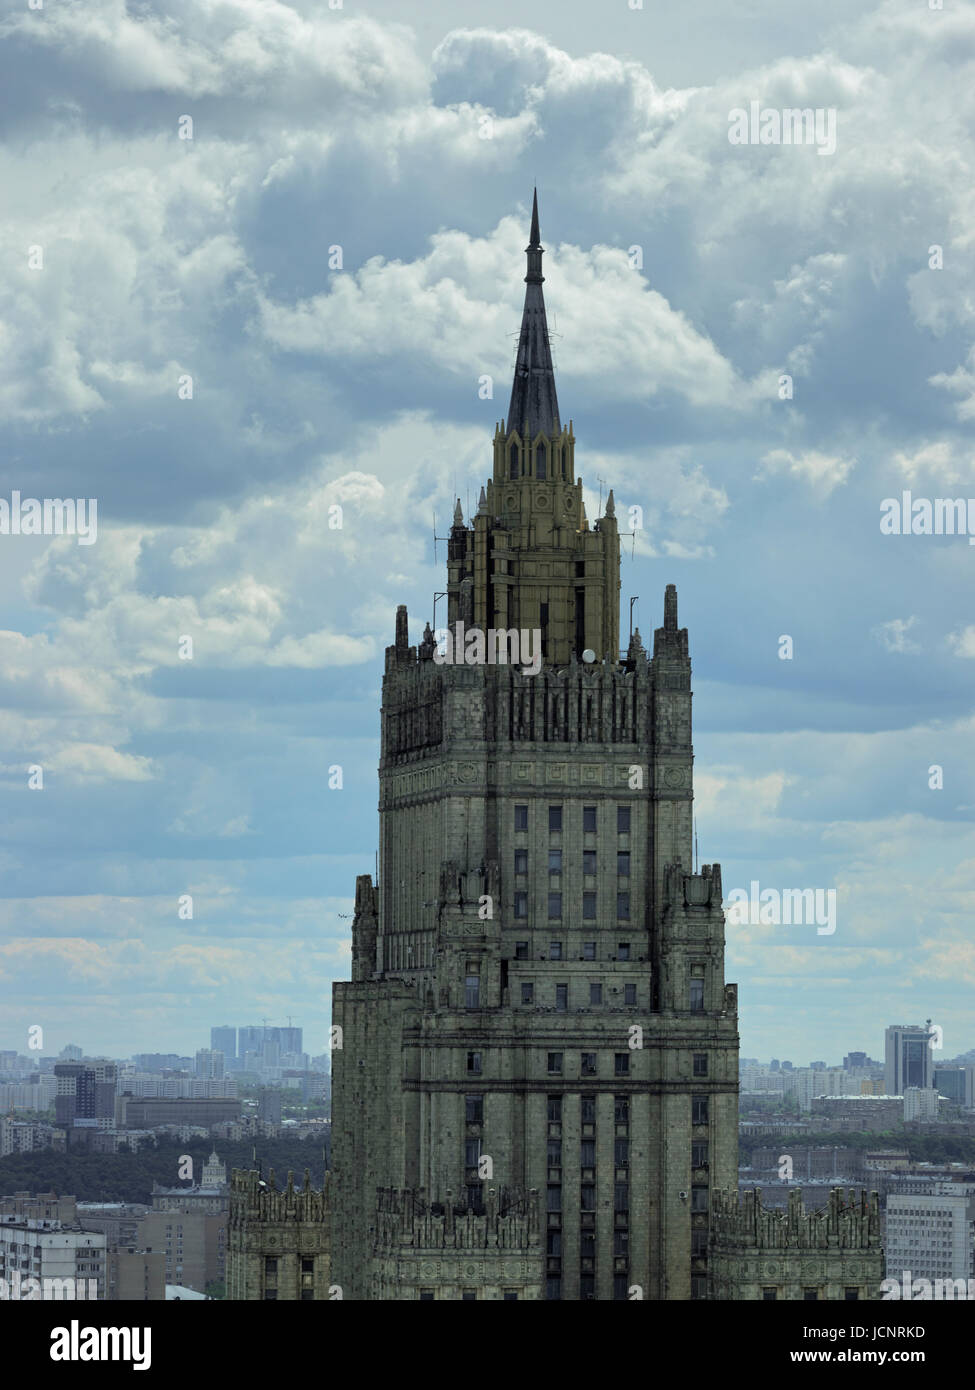 L'edificio di Stalin, Ministero degli Affari Esteri, Mosca, Russia, Europa, Sette sorelle, Stalin architettura Foto Stock